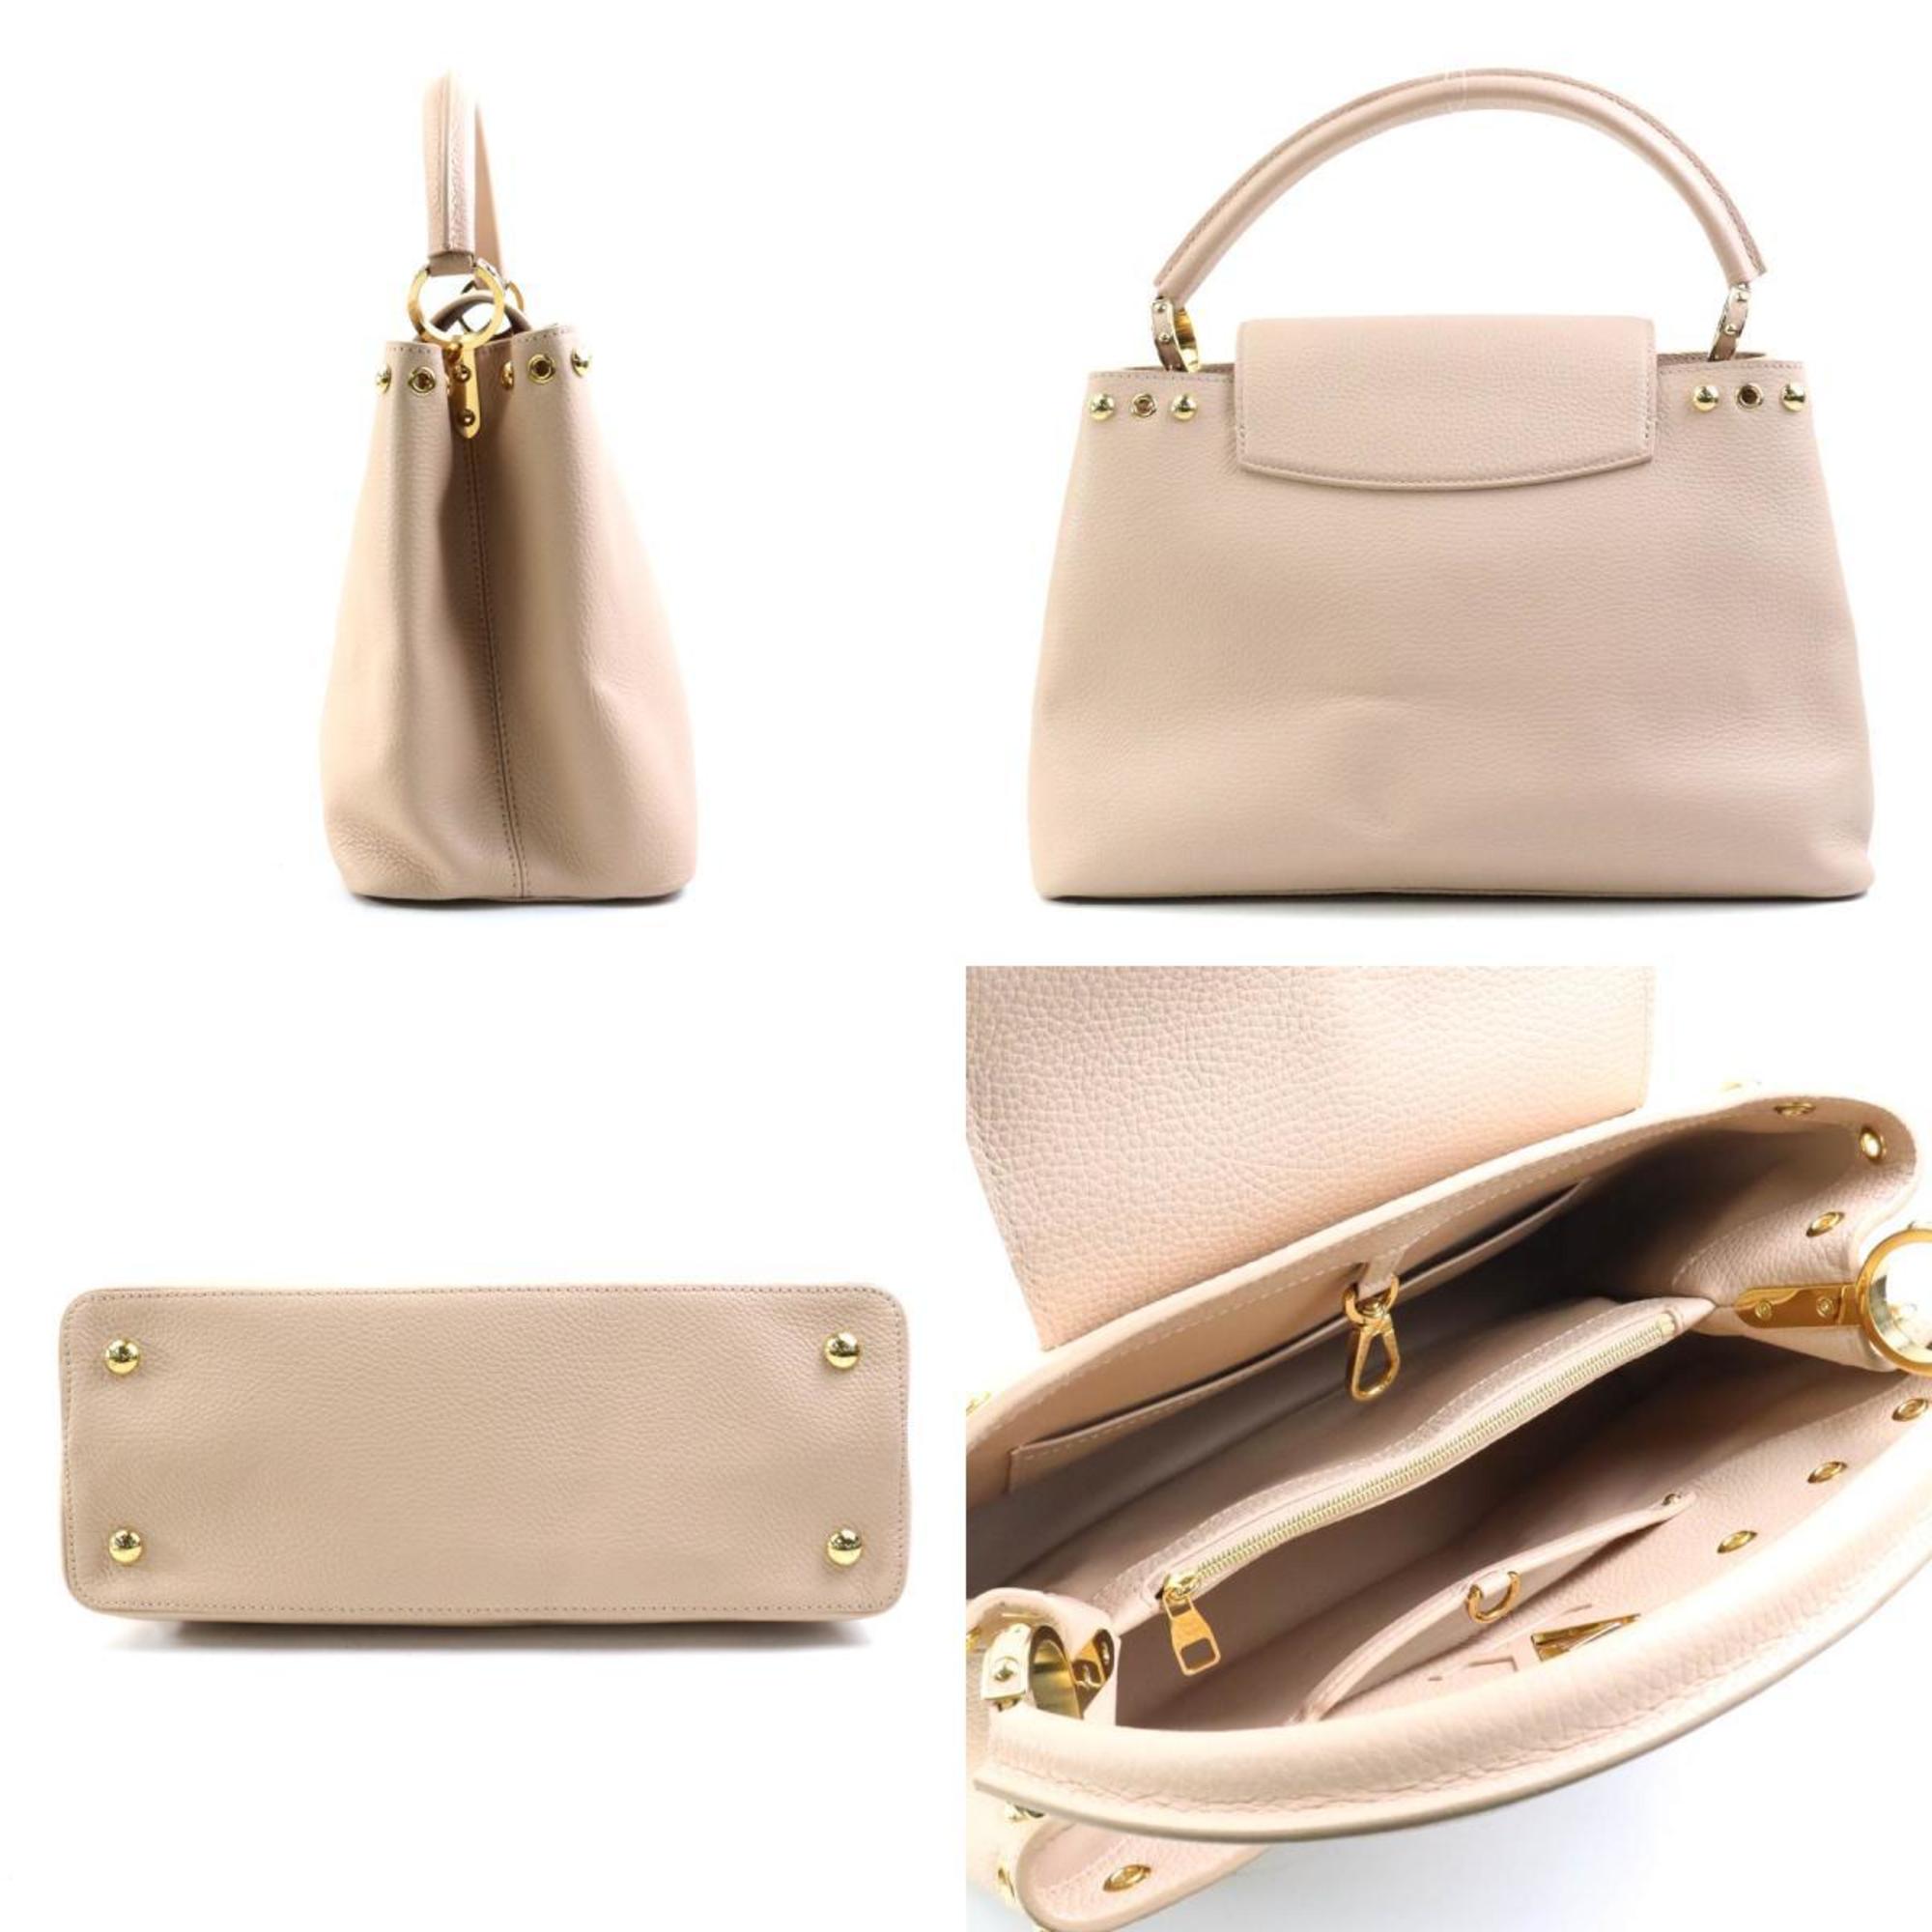 Louis Vuitton LOUIS VUITTON Handbag Capucines MM Leather Pink Beige Women's a0310